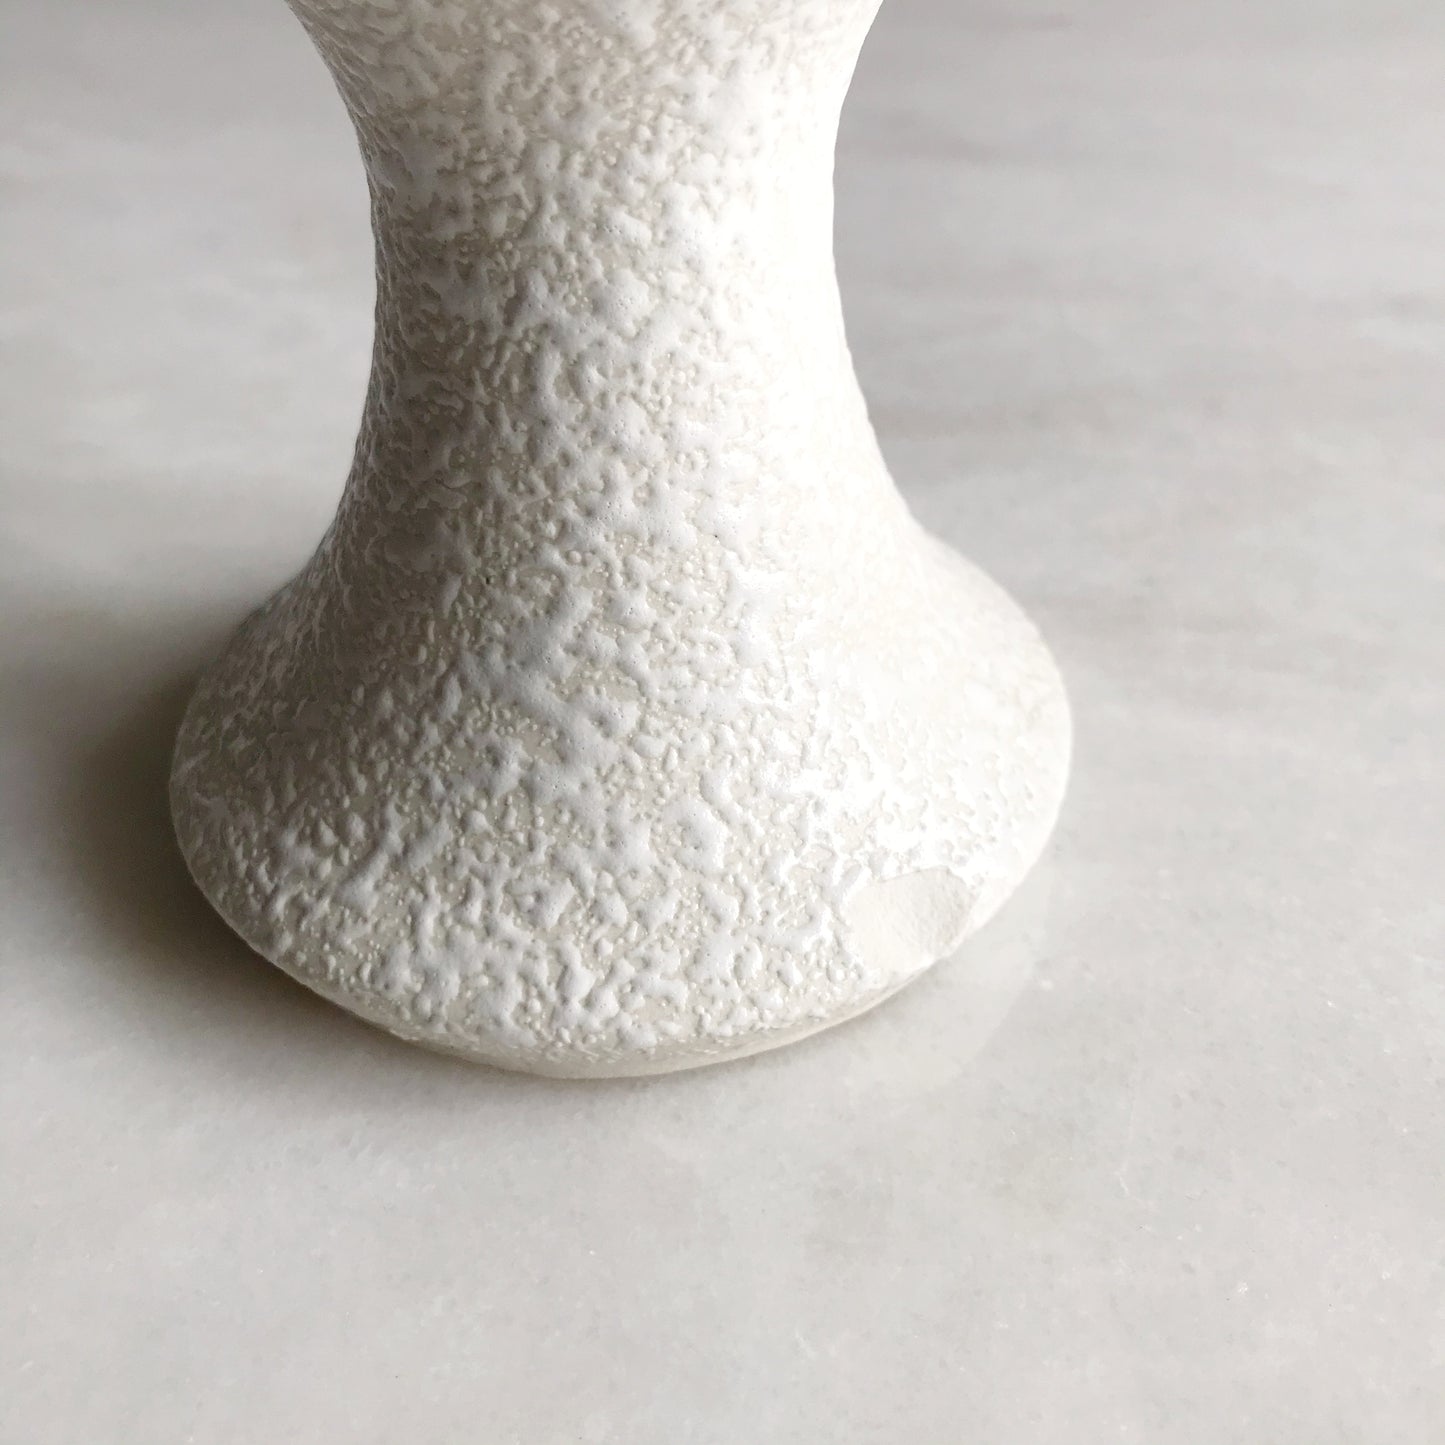 Vintage Ceramic Pedestal Vase, Mint